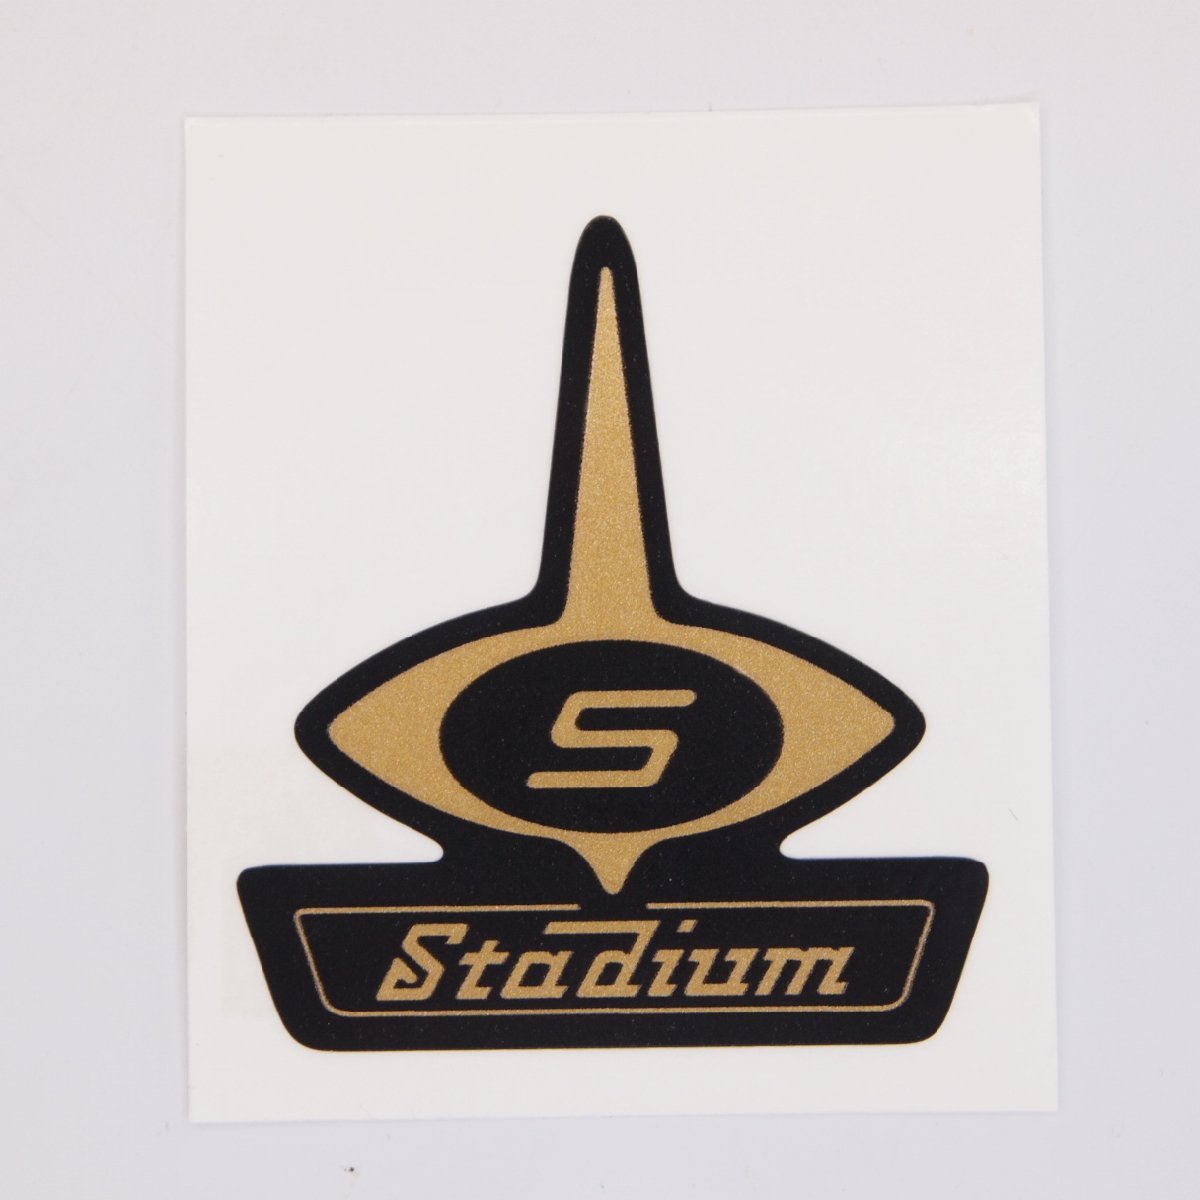 Sticker Stadium for Helmet スタジアム ヘルメット ステッカー リプロ品 VESPA ベスパ Lambretta ランブレッタの画像1